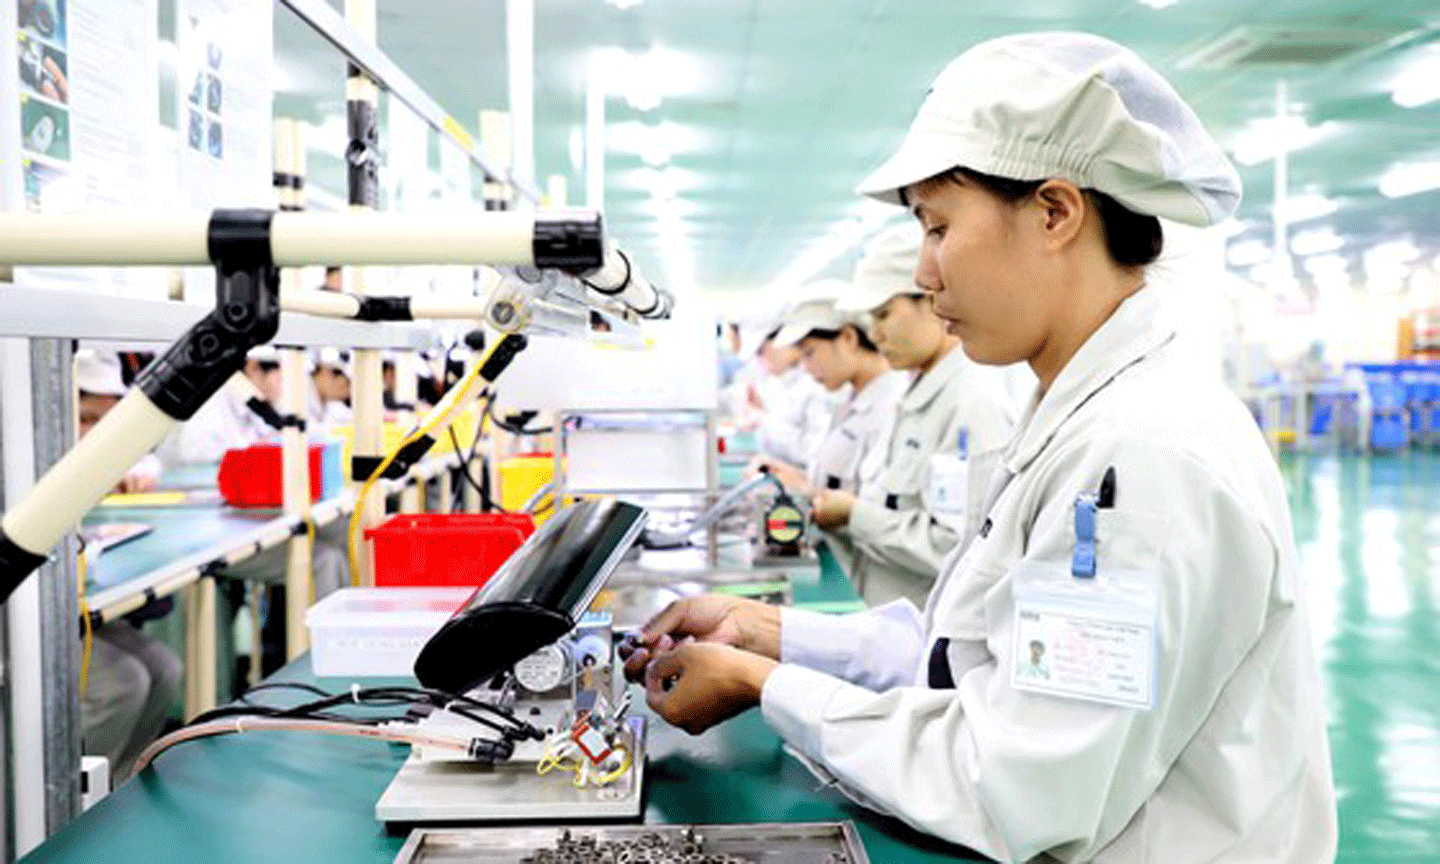 Hoạt động sản xuất tại Công ty Origin Manufactures Vietnam (doanh nghiệp FDI Nhật Bản) tại Khu công nghiệp Đồng Văn, tỉnh Hà Nam. Ảnh: QUANG PHÚC